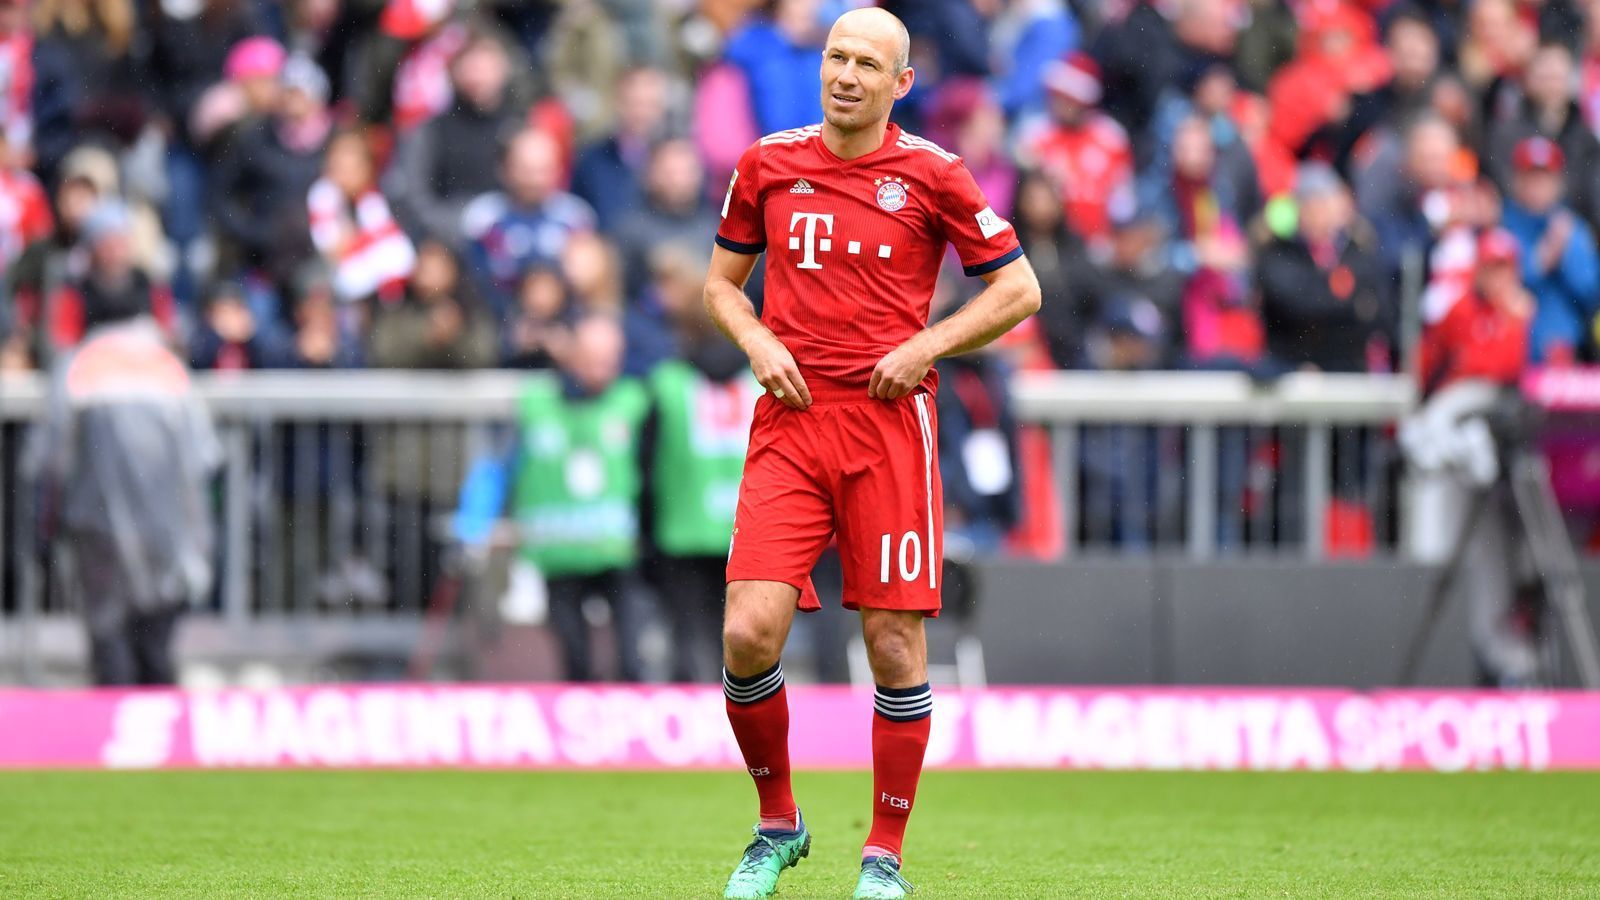 
                <strong>Platz 4 - Arjen Robben (FC Bayern München) - 152 Scorerpunkte</strong><br>
                Bundesliga-Tore: 99Bundesliga-Vorlagen: 53
              